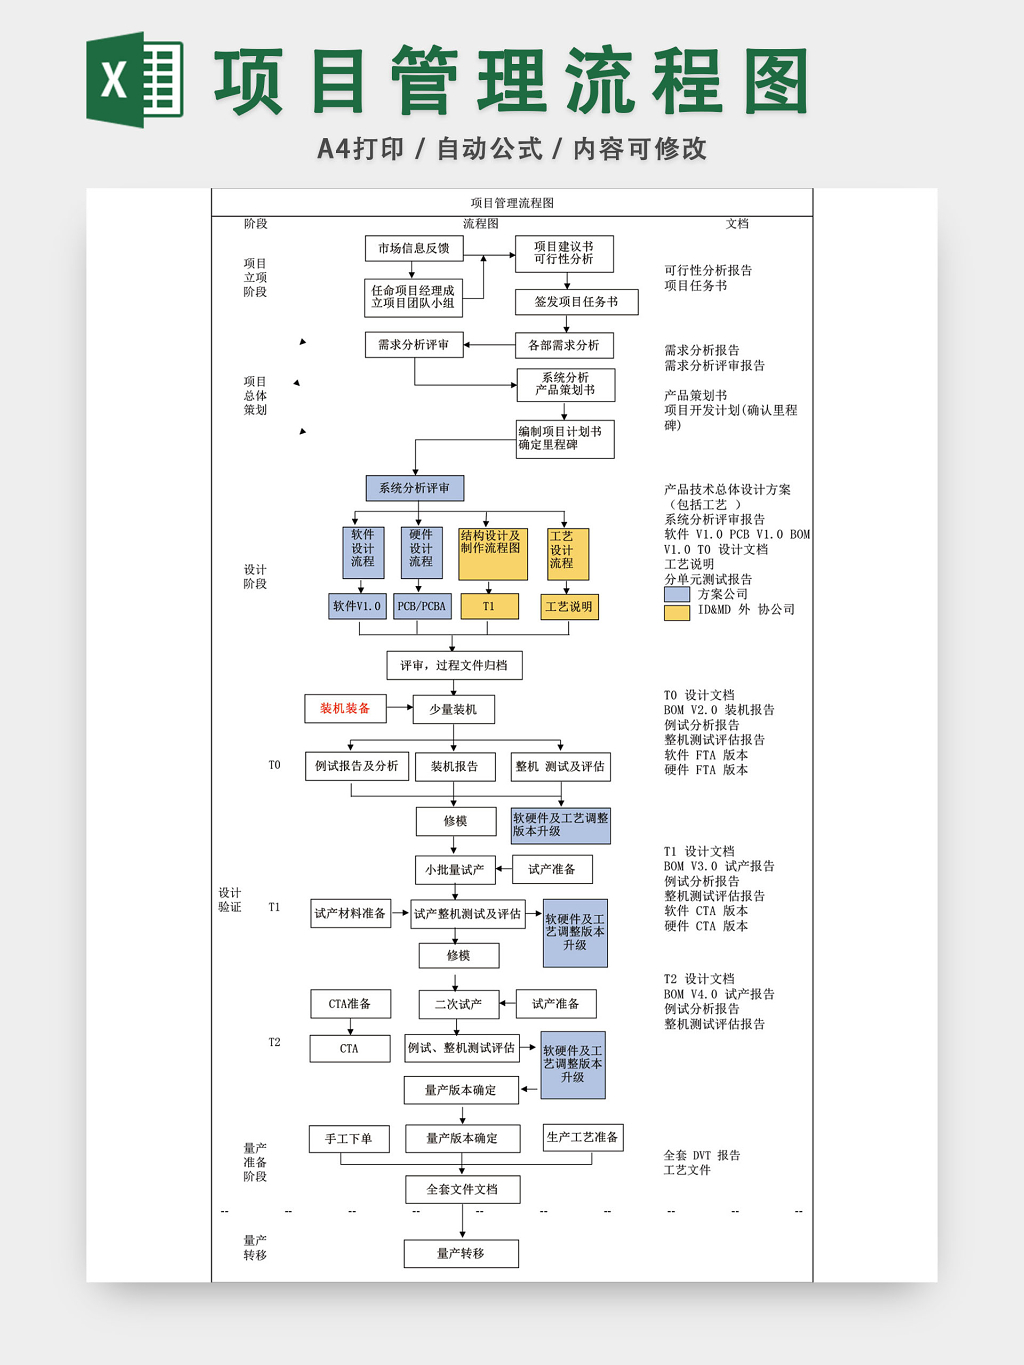 项目管理流程图模板EXCEL表